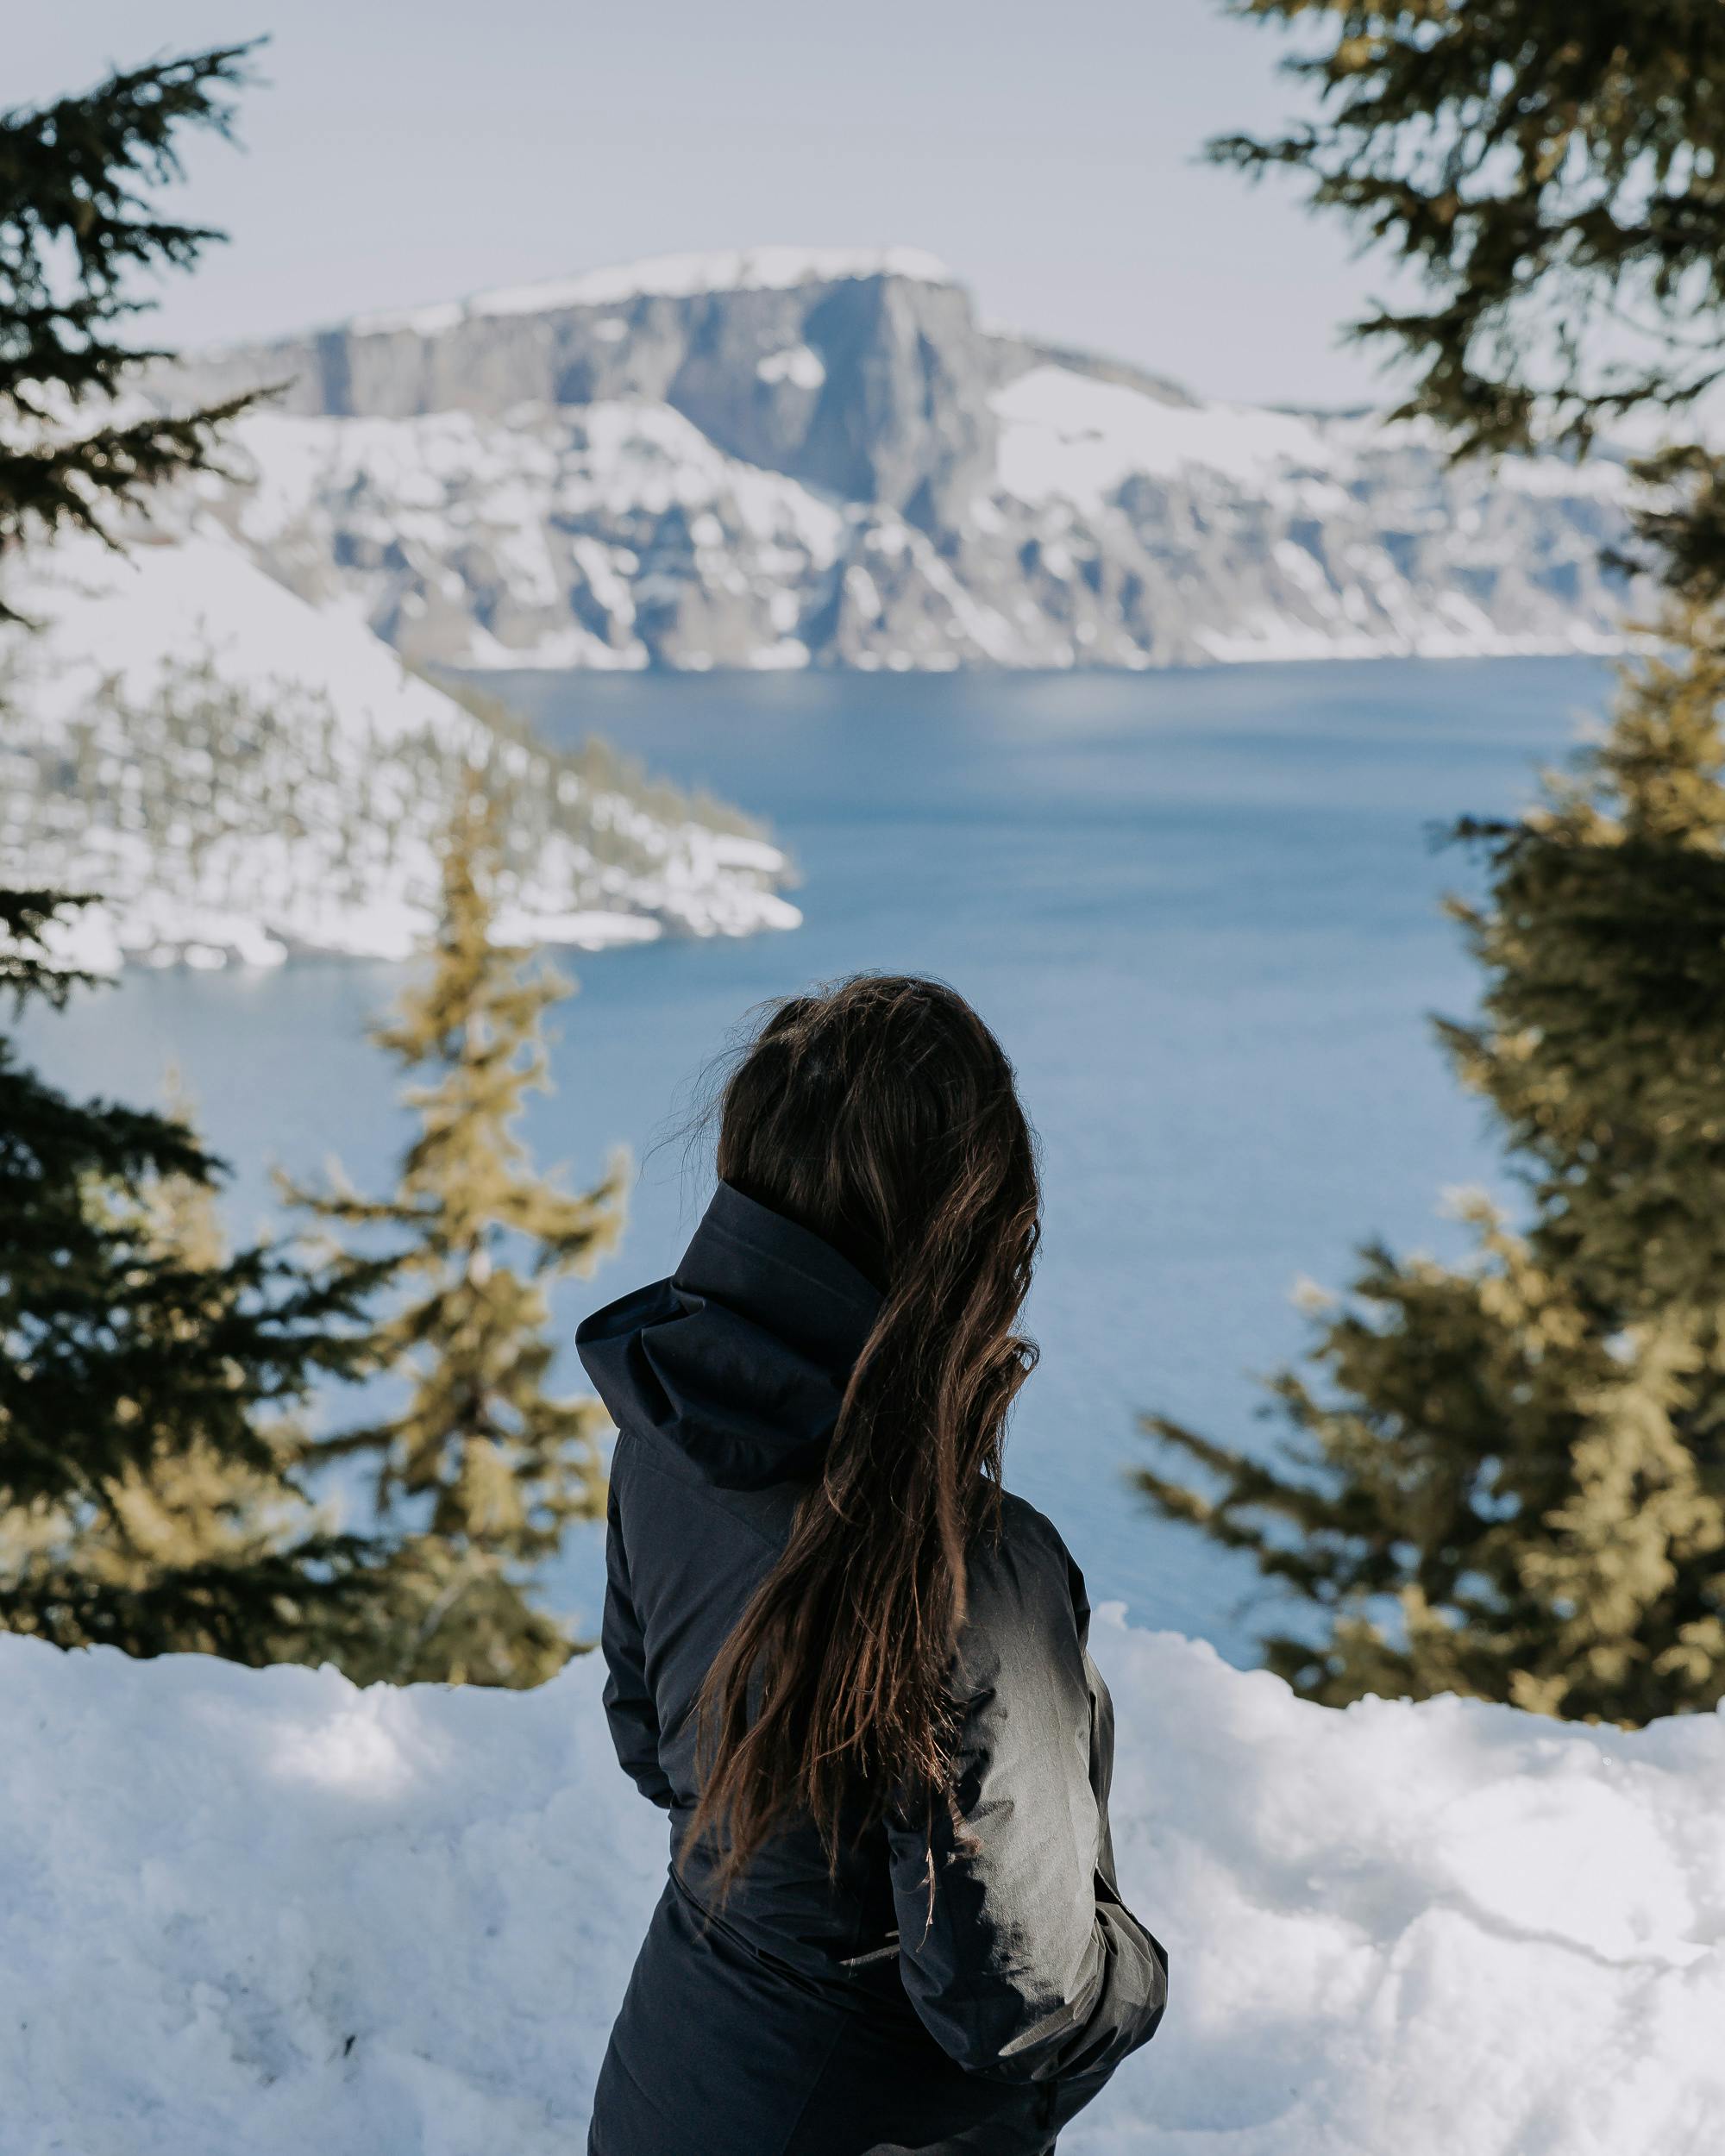 Lindsay Kagalis looking out at Crater Lake during the winter season